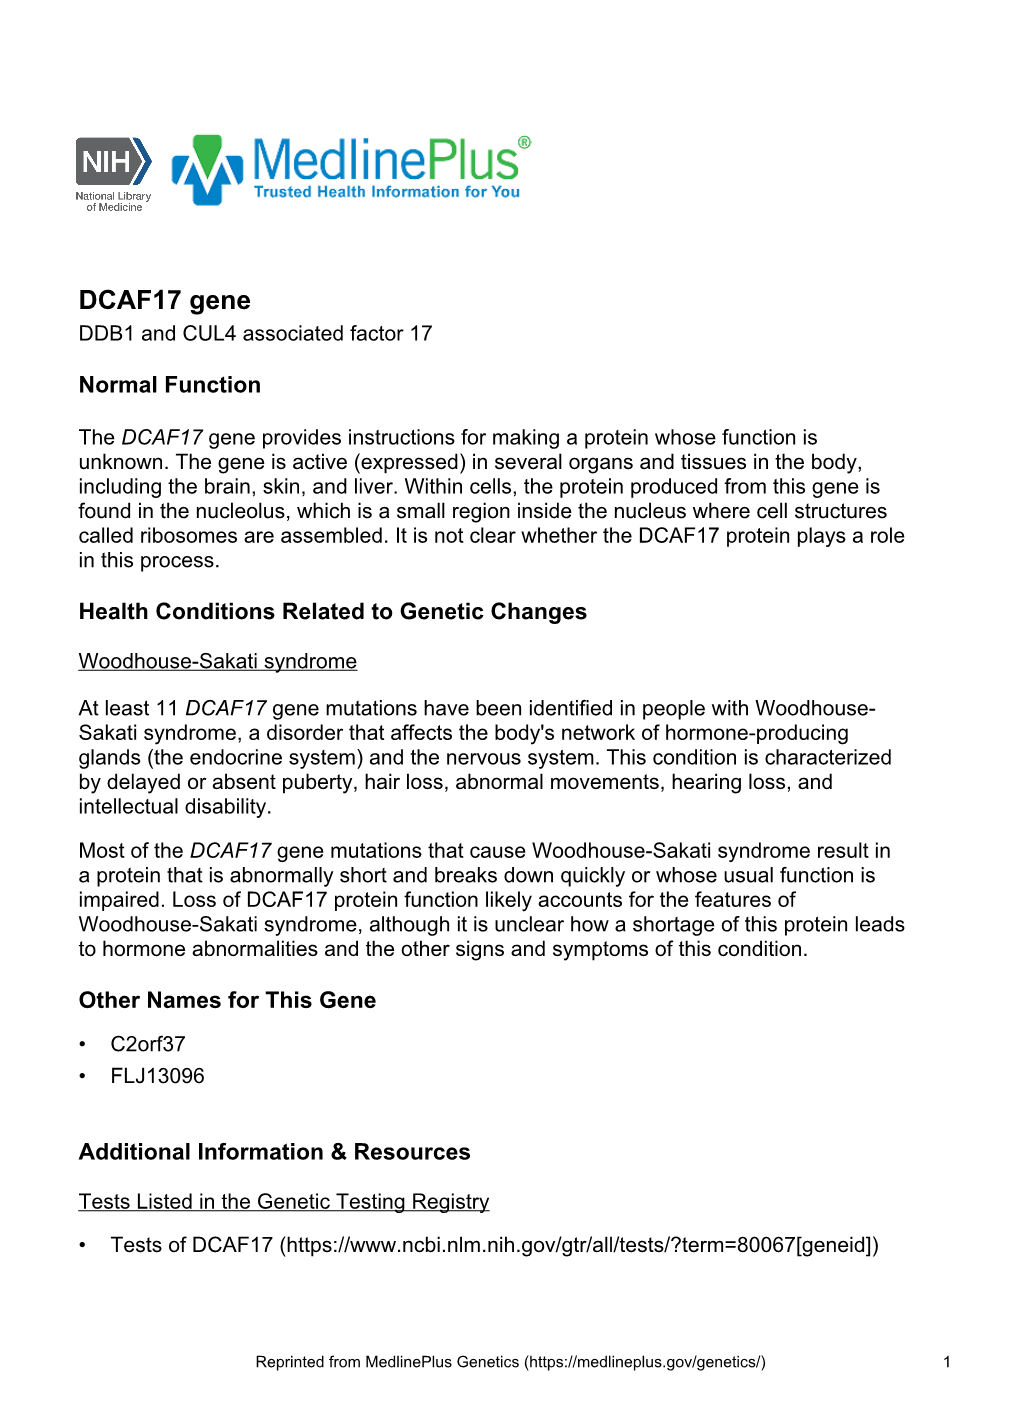 DCAF17 Gene DDB1 and CUL4 Associated Factor 17